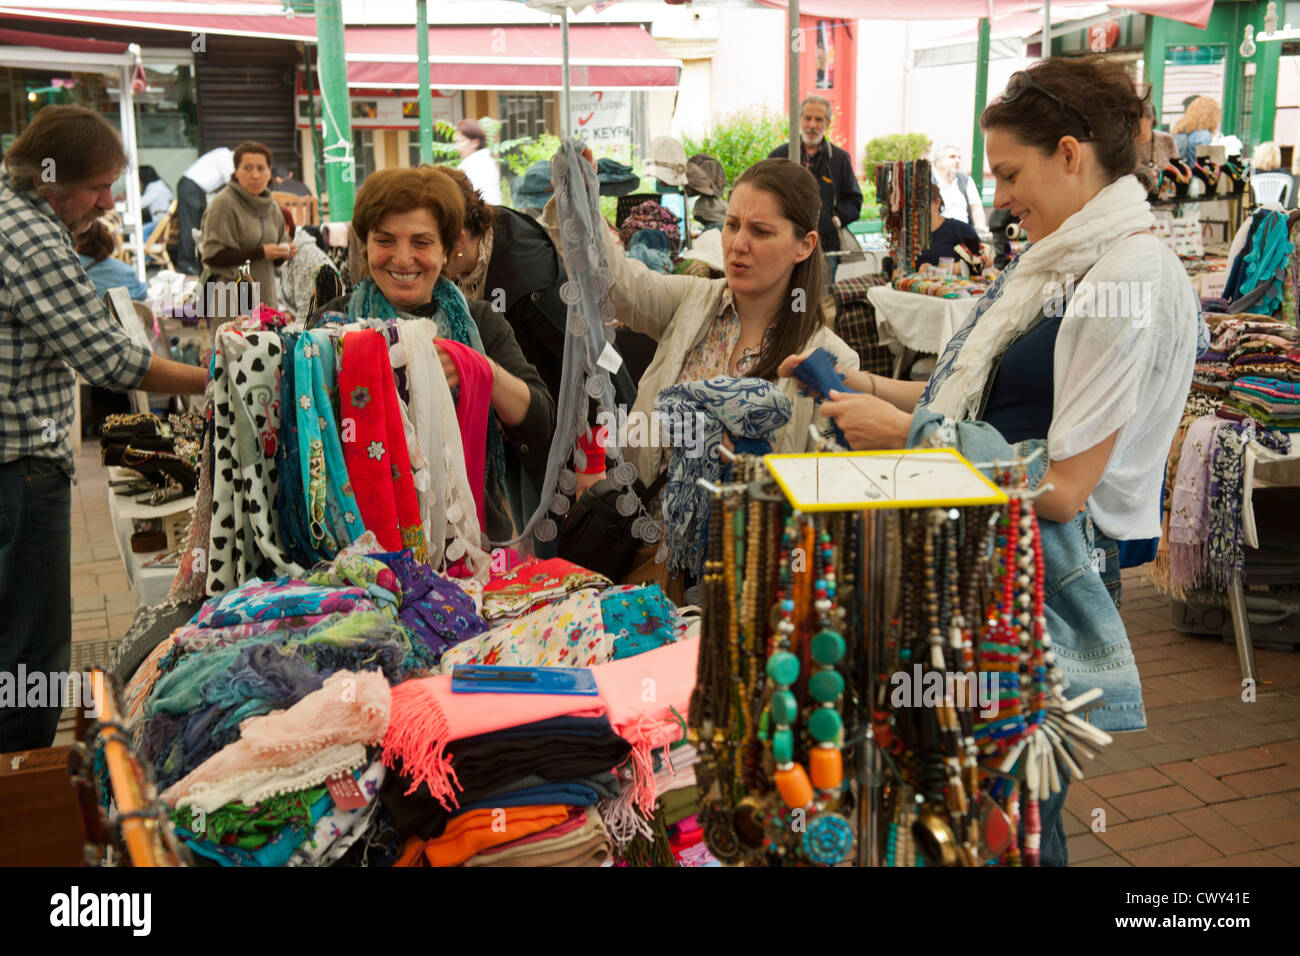 Türkei, Istanbul, Ortaköy, jeden Sonntag findet dort ein Markt statt mit Antiquitäten, Modeschmuck... Stock Photo